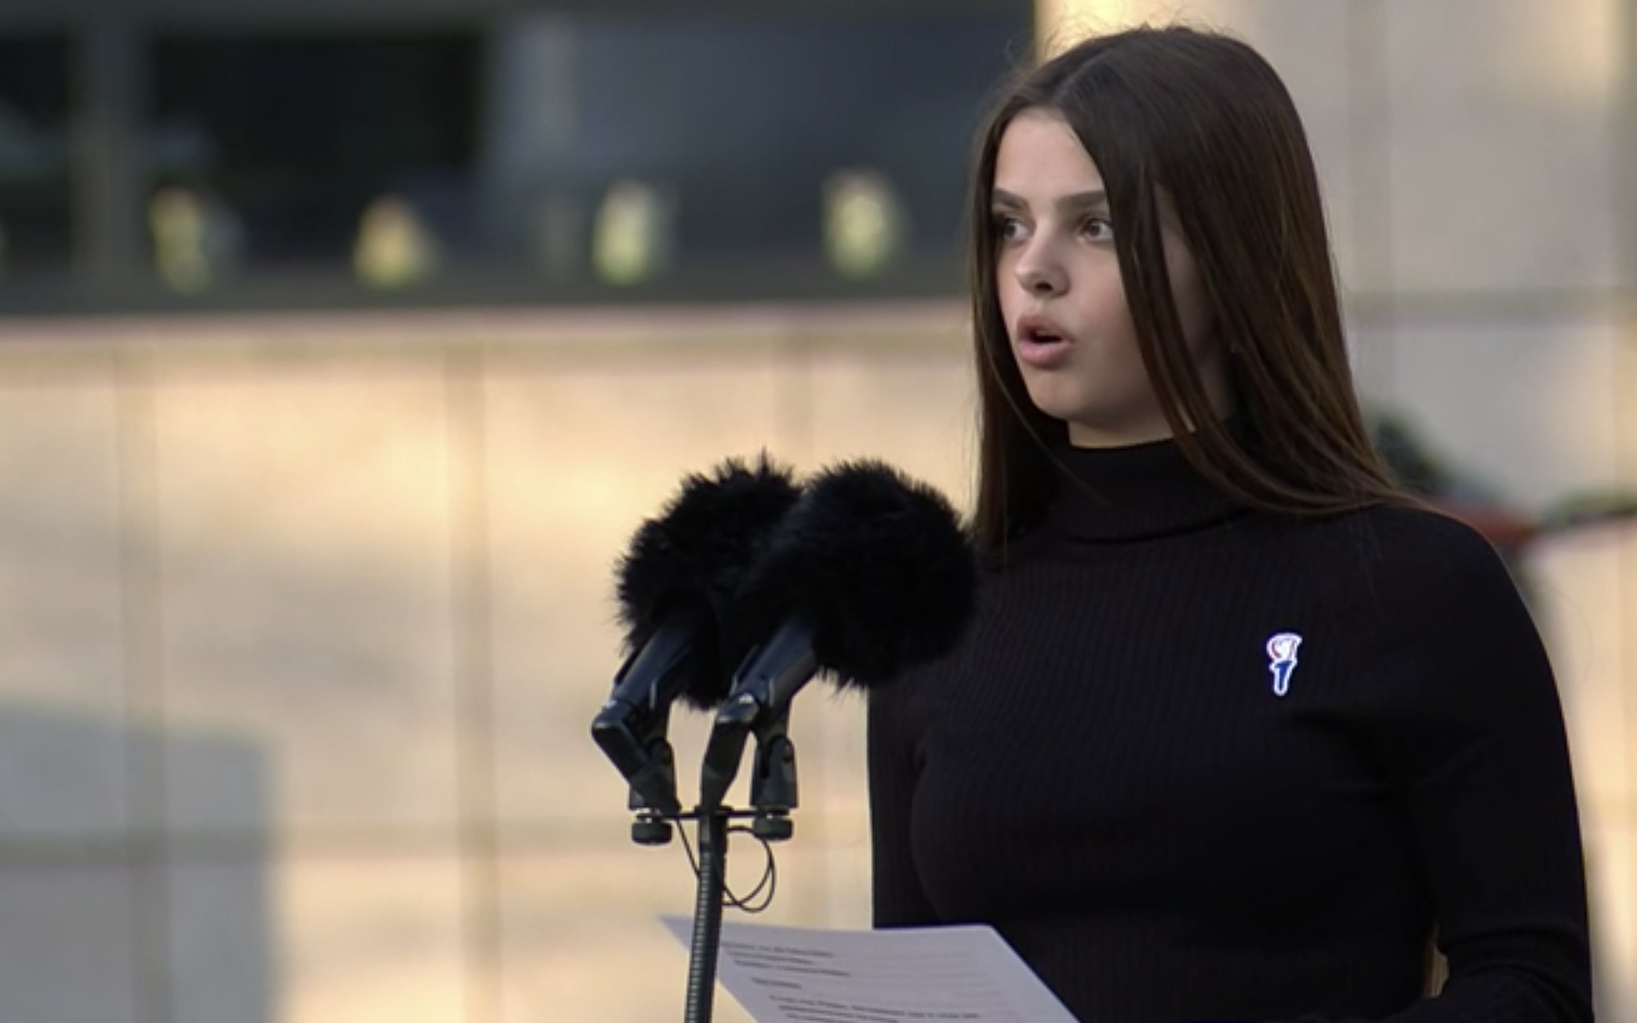 Loewana (17) maakt indruk met toespraak bij Nationale Dodenherdenking